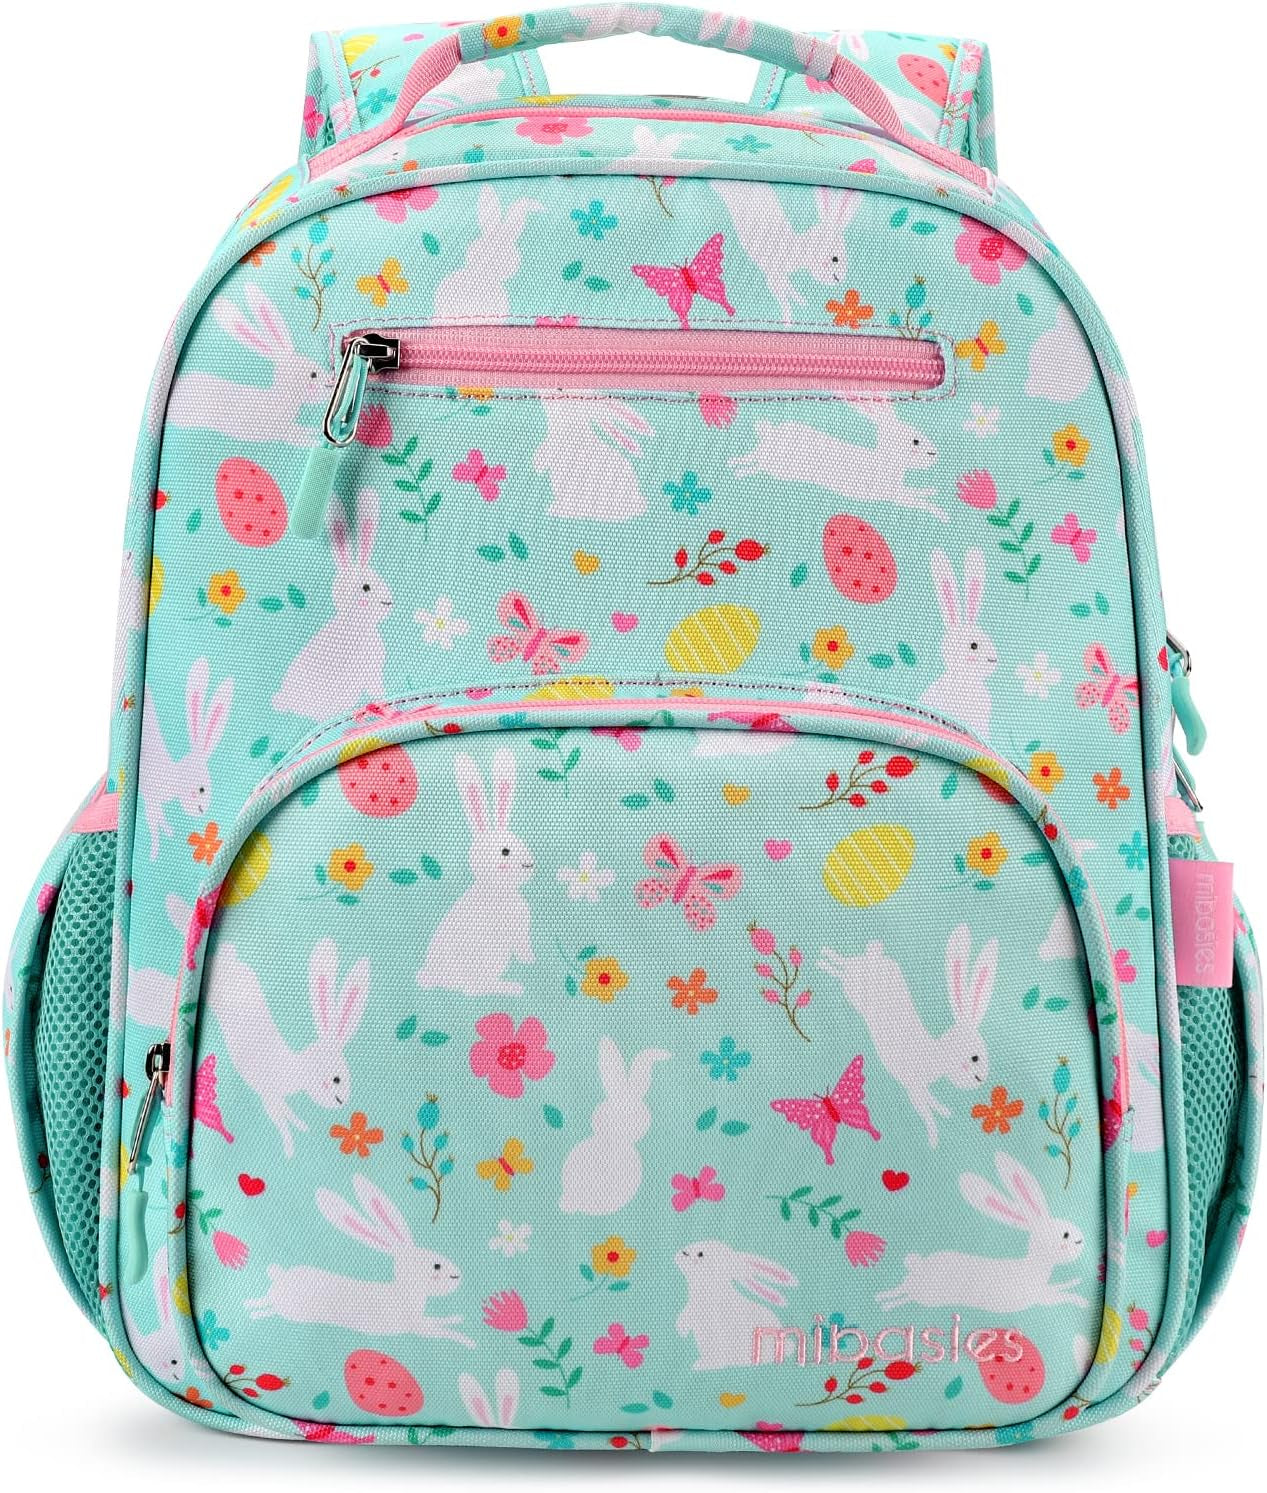 Girls Backpack for Elementary School, Backpack for Girls 5-8, Lightweight Kids Backpacks for Girls（Rabbit）